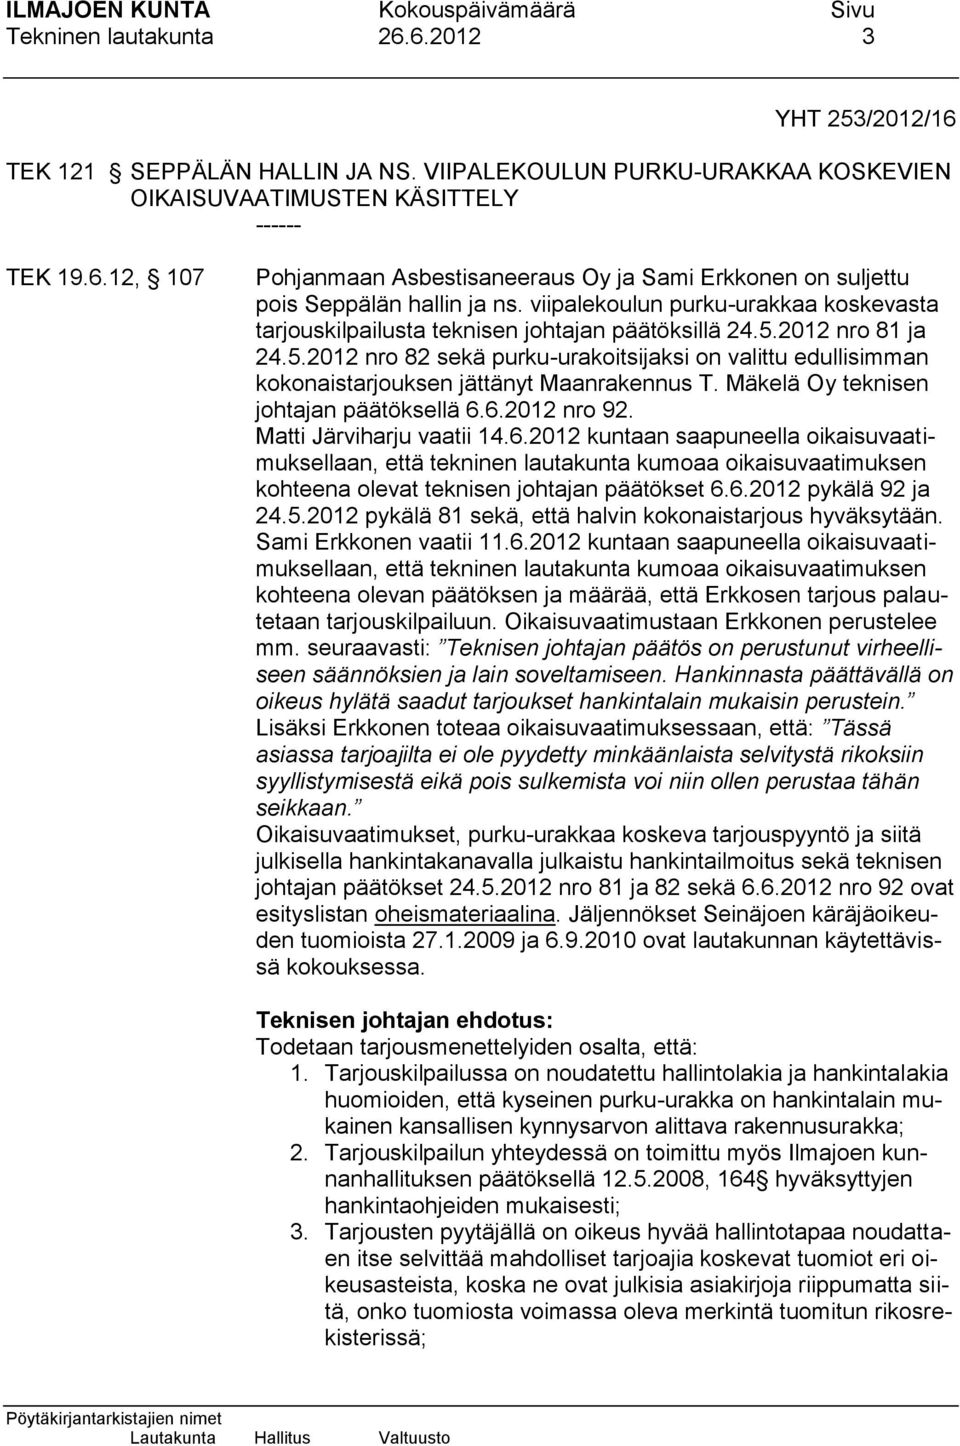 Mäkelä Oy teknisen johtajan päätöksellä 6.6.2012 nro 92. Matti Järviharju vaatii 14.6.2012 kuntaan saapuneella oikaisuvaatimuksellaan, että tekninen lautakunta kumoaa oikaisuvaatimuksen kohteena olevat teknisen johtajan päätökset 6.